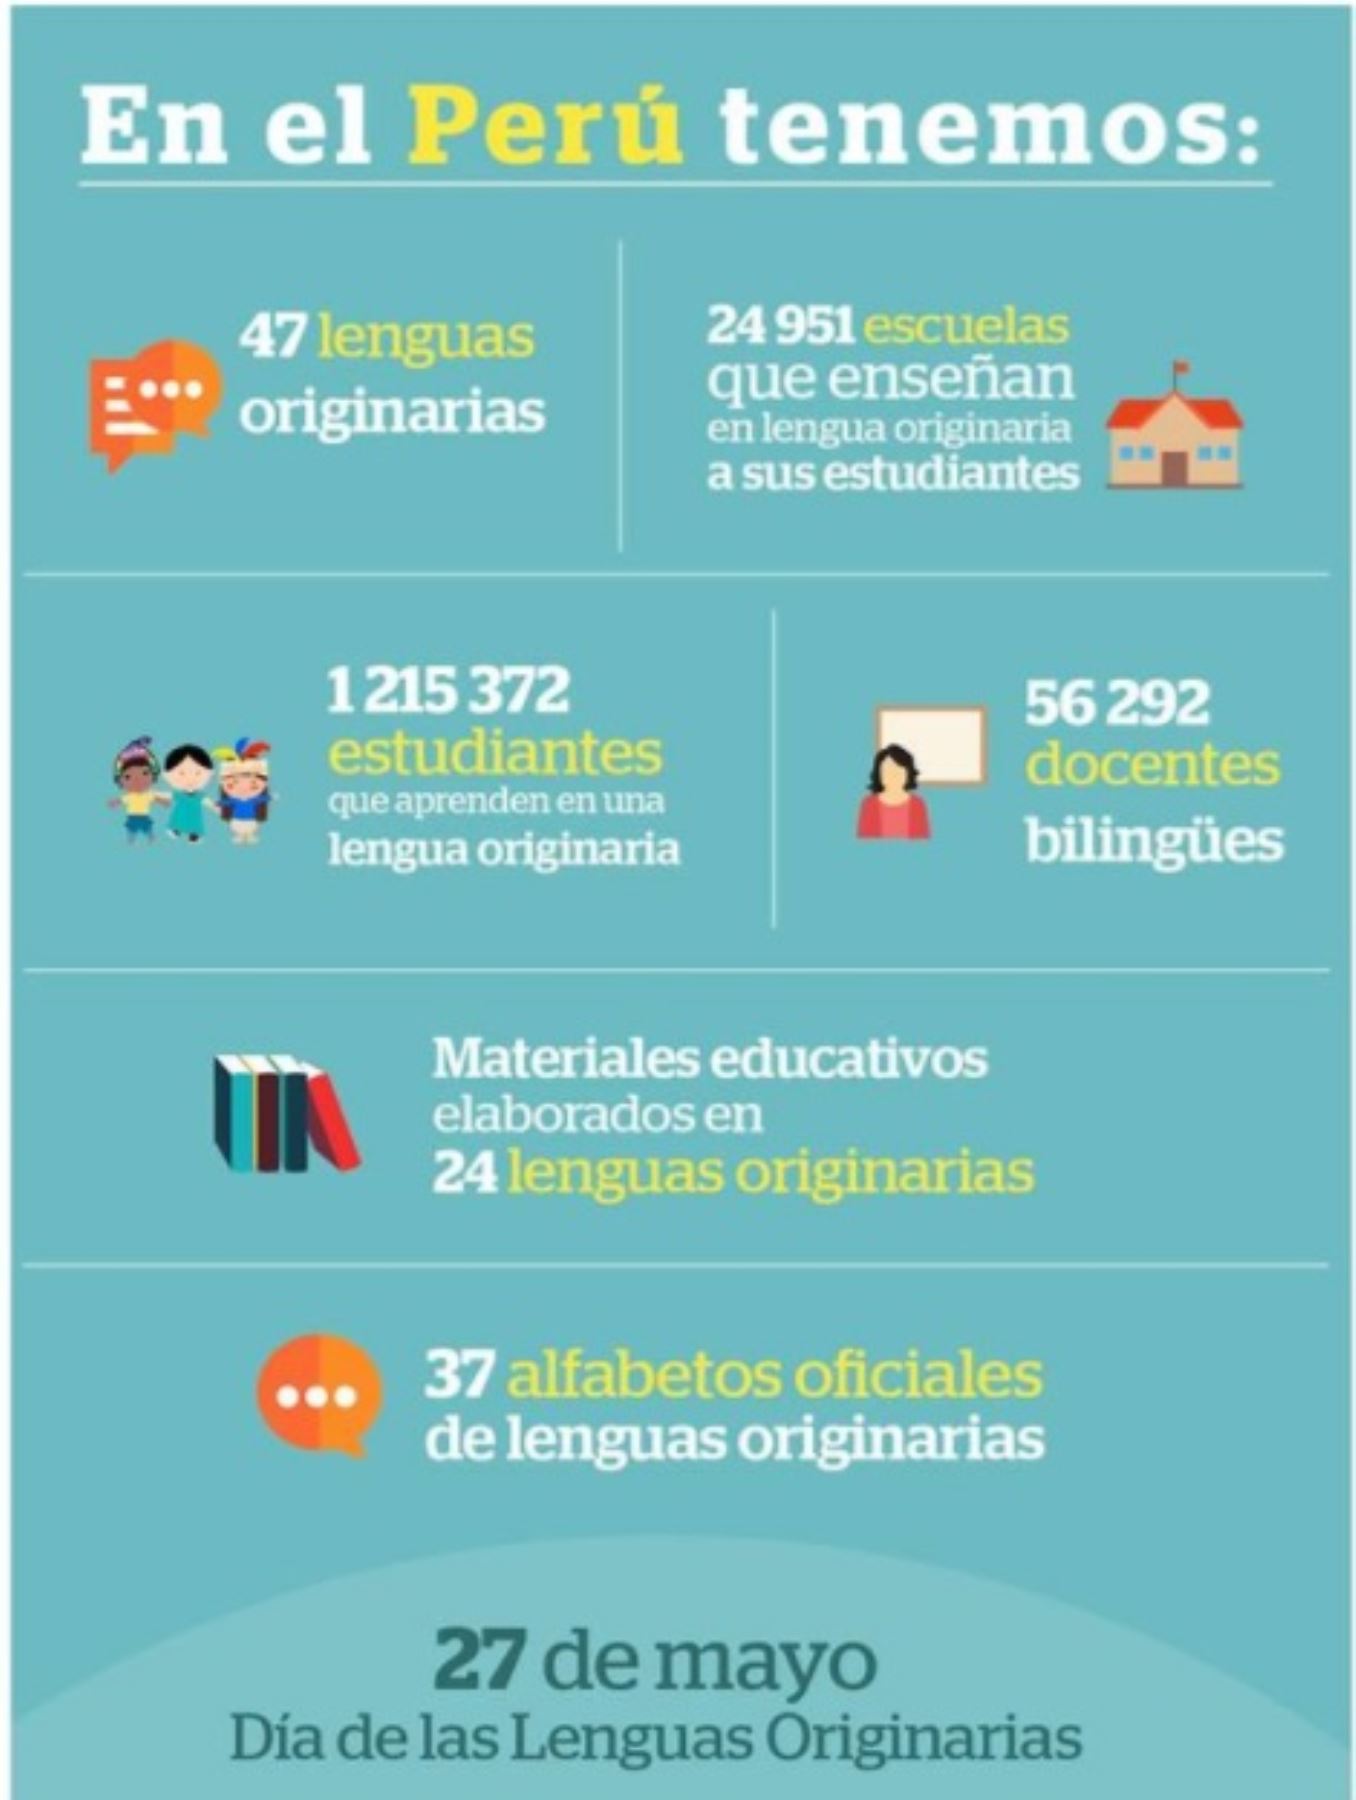 Situación de las lenguas originarias en el Perú, según el Ministerio de Educación.